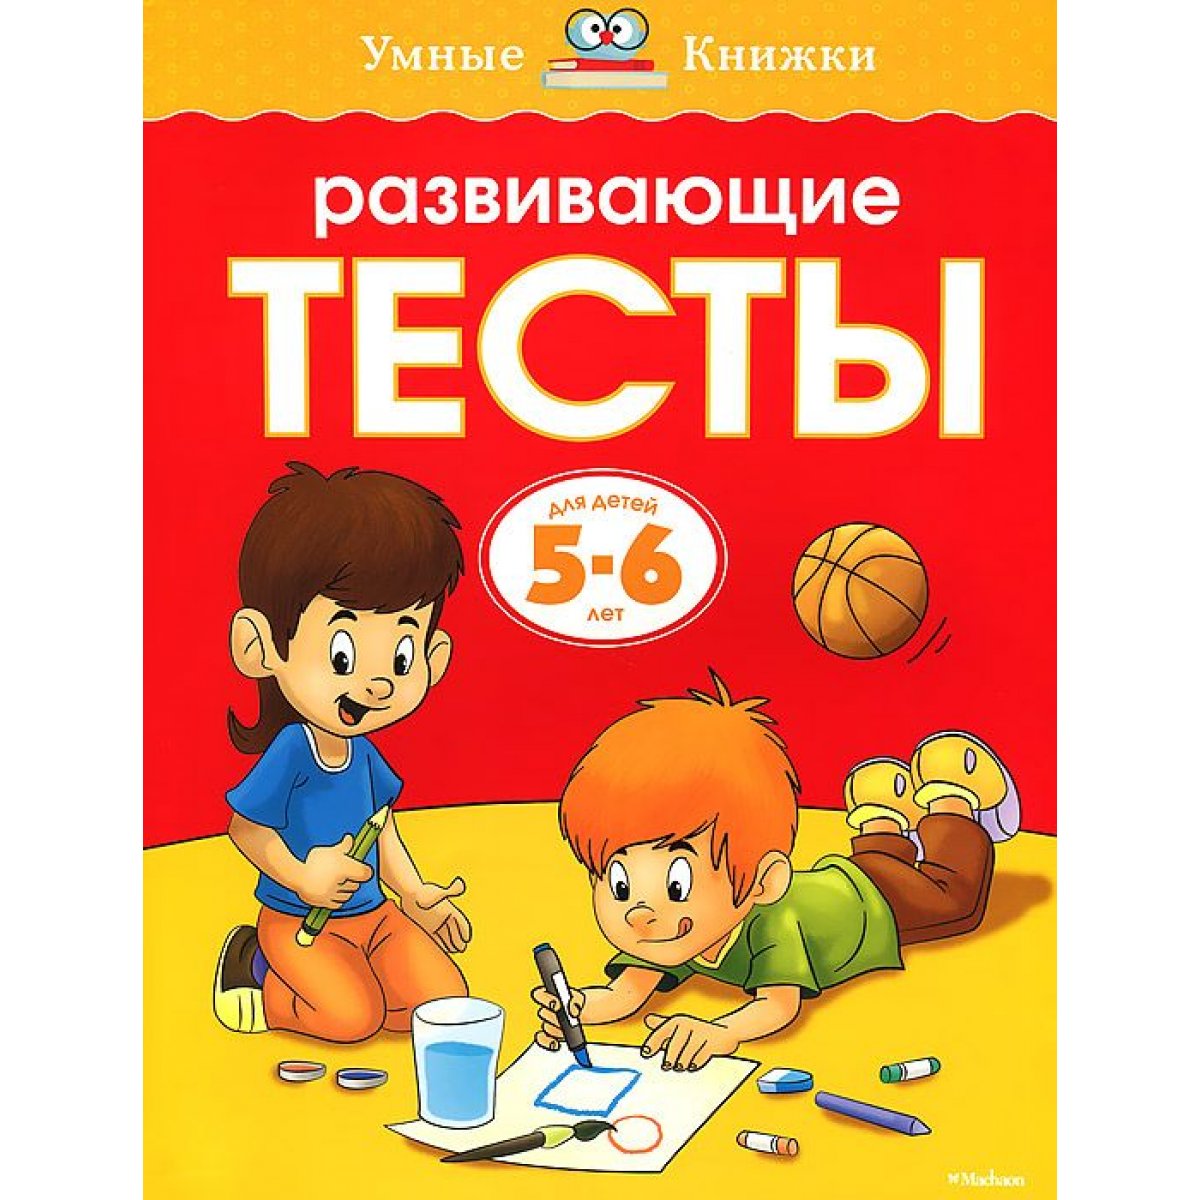 20 лучших книг для детей 6 лет ✅ Блог aikimaster.ru